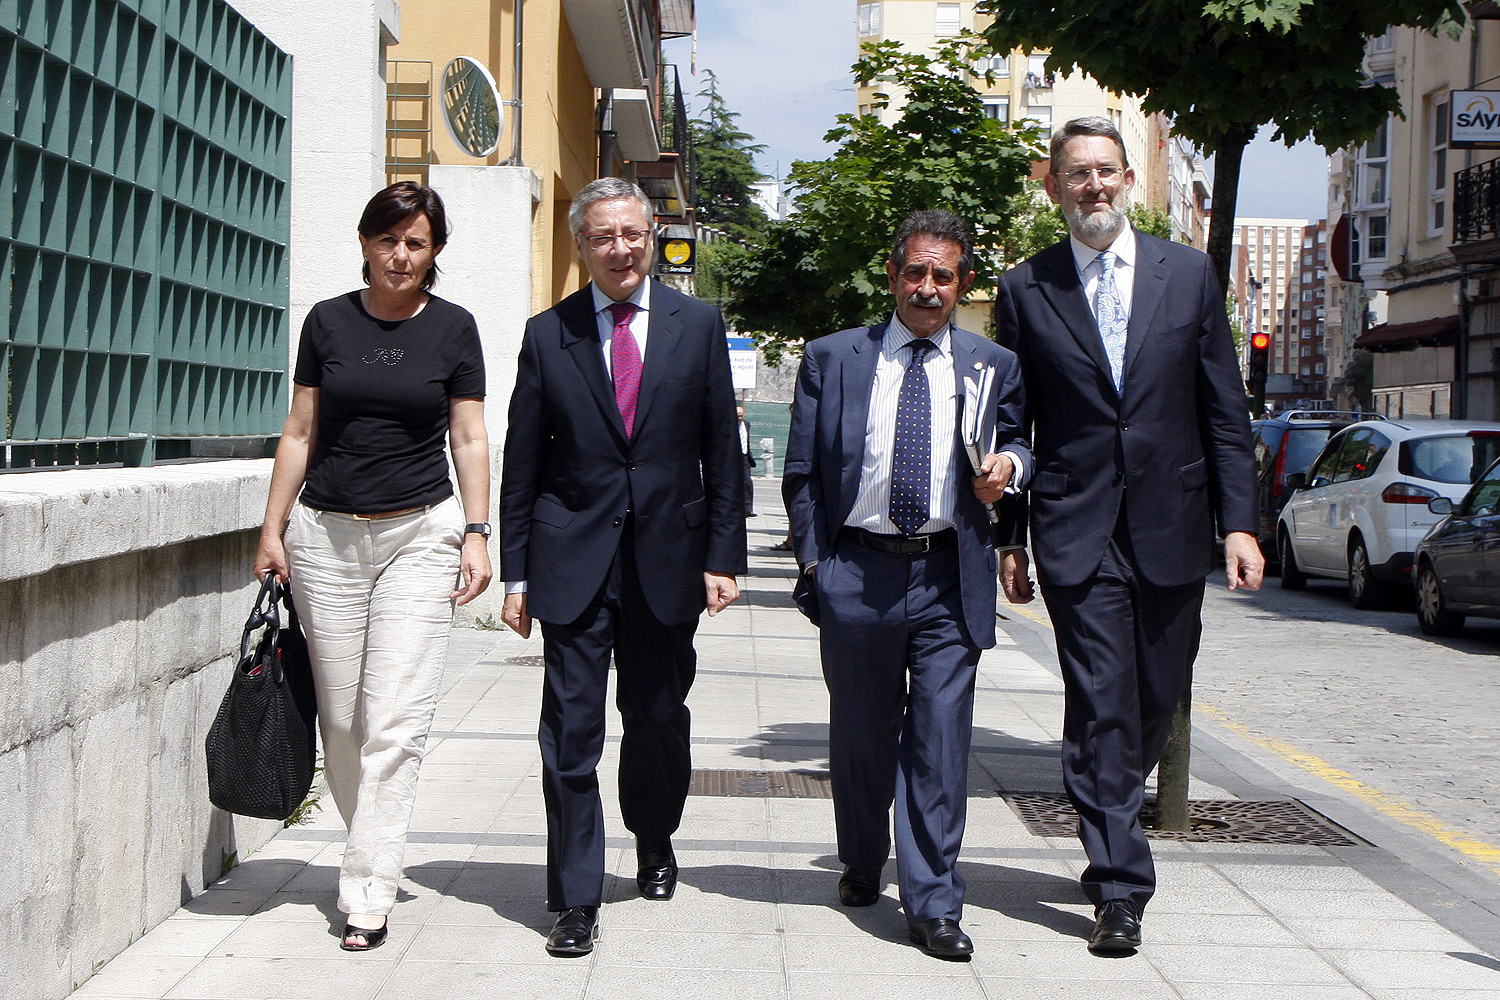 El ministro de fomento yt el presidente de Cantabria, en el centro, acompañados de la vicepresidenta regional y el delegado del Gobierno